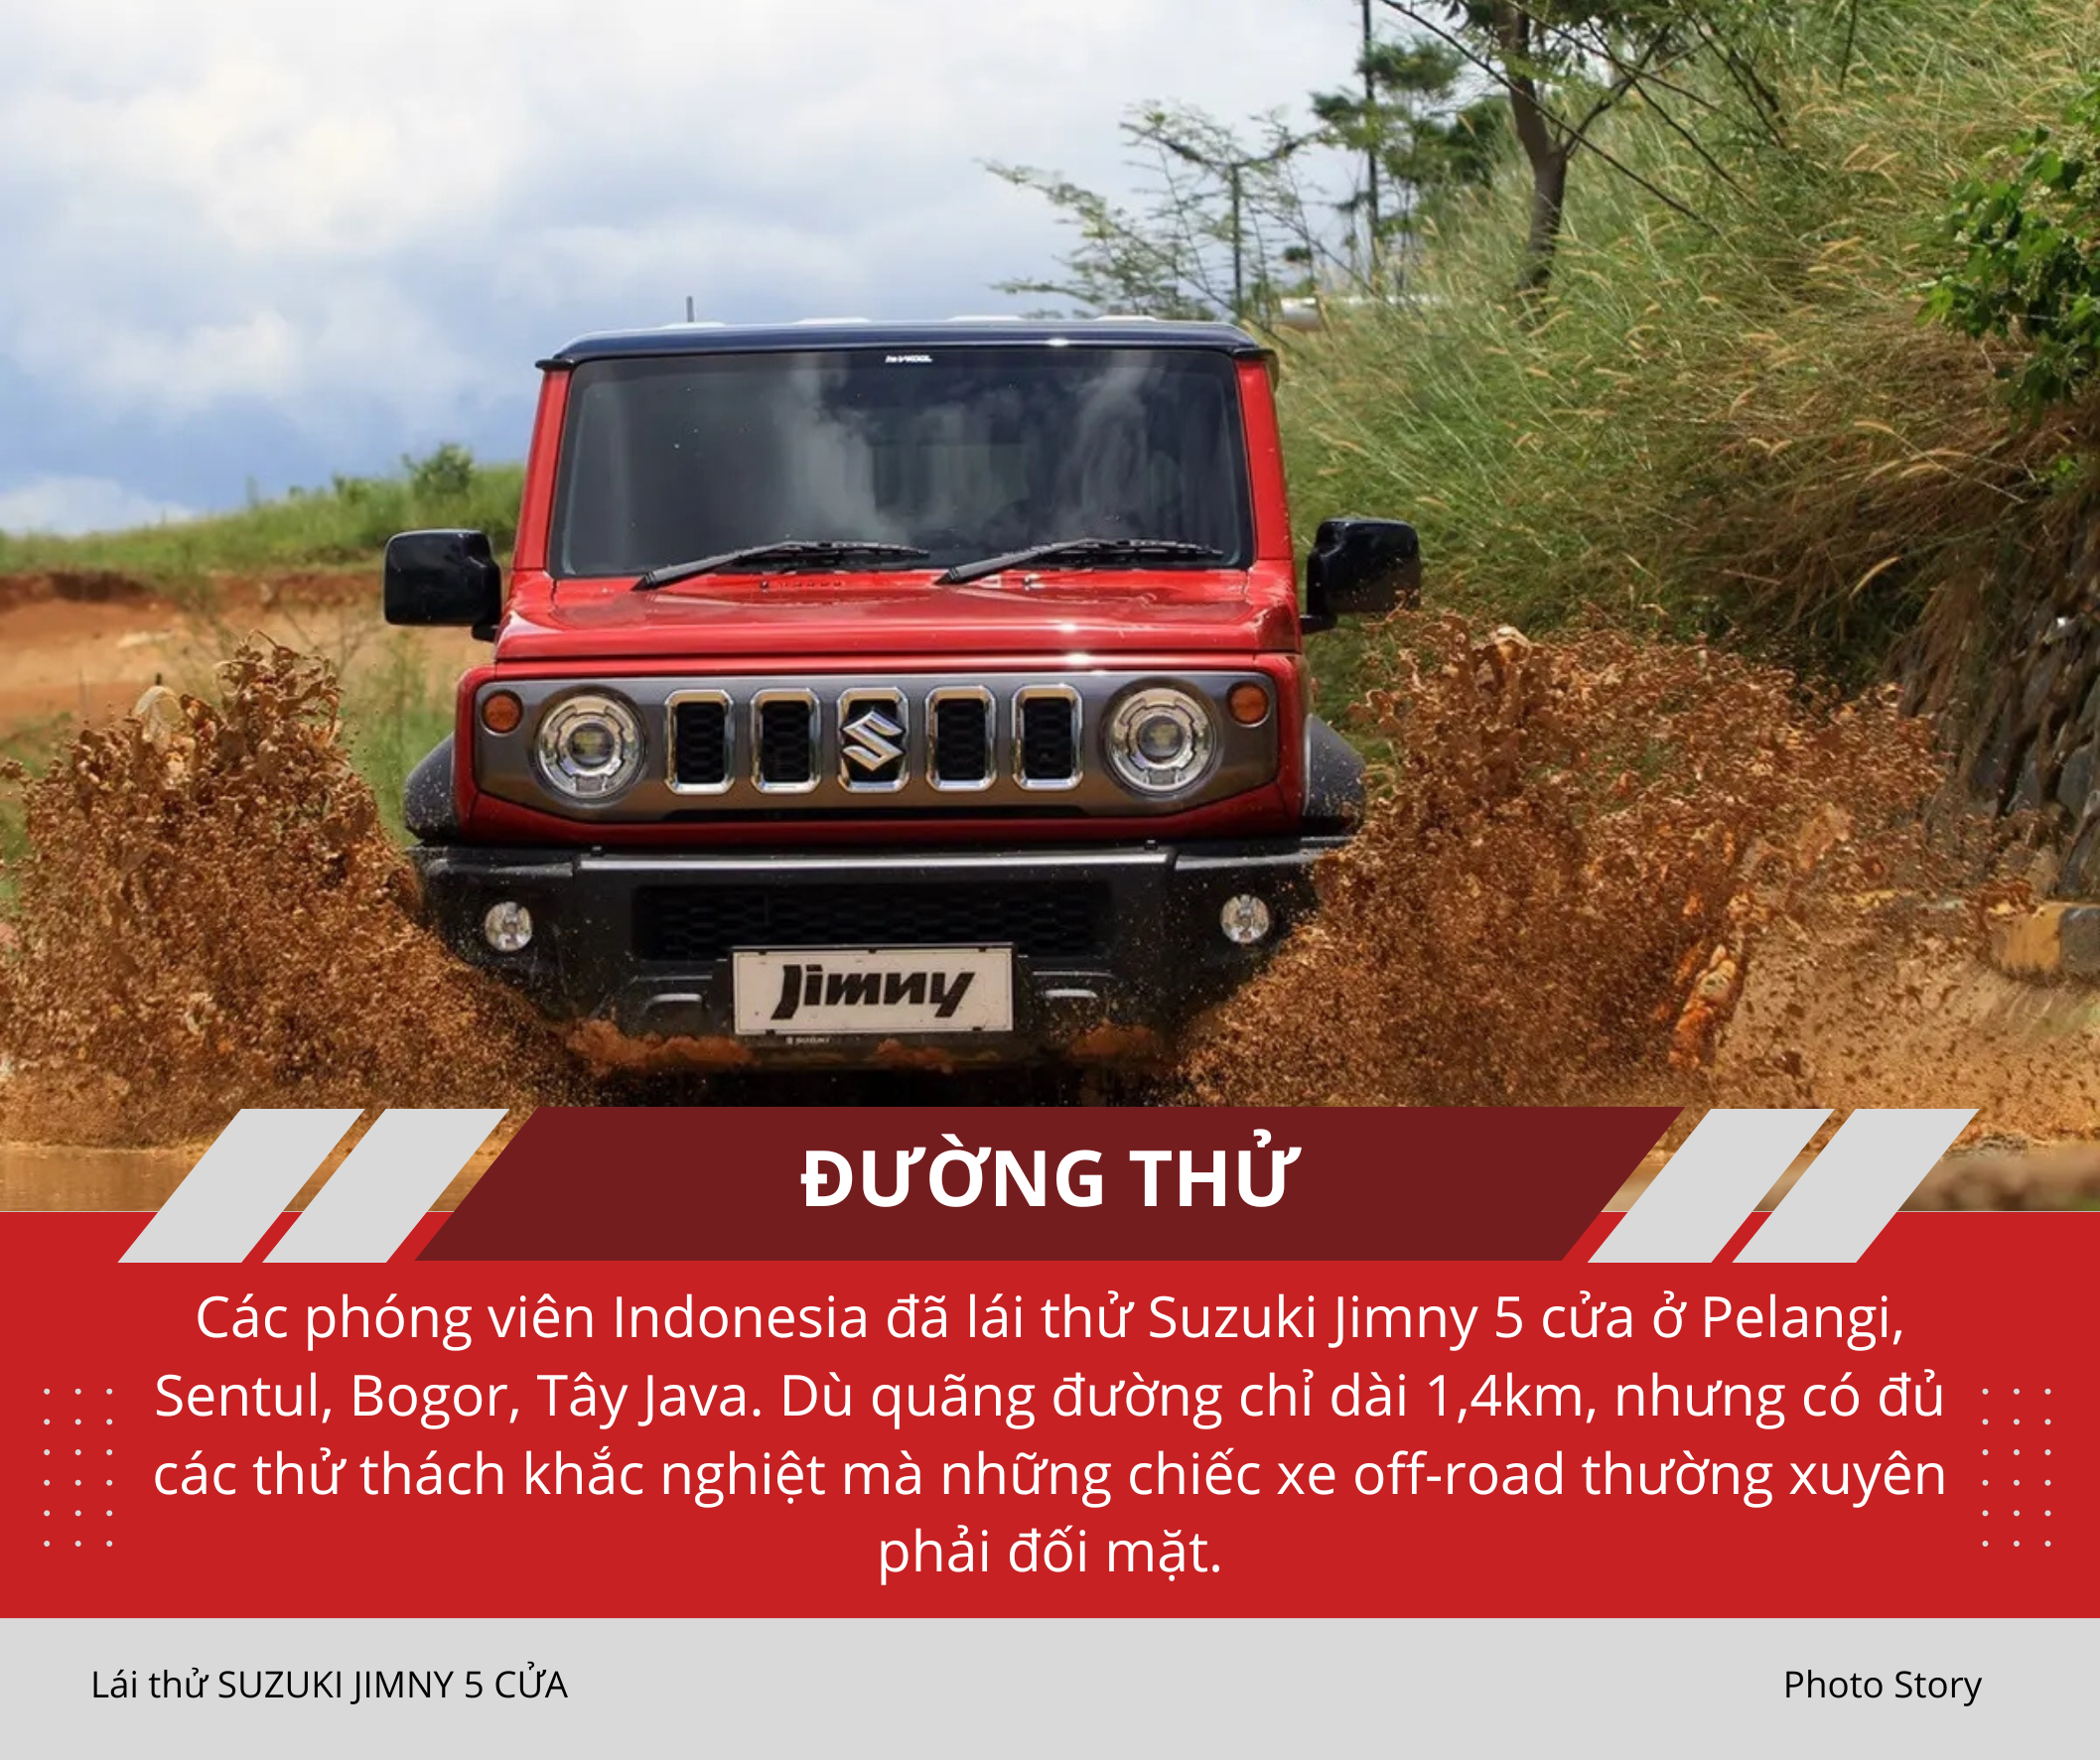 Mang Suzuki Jimny 5 cửa vào rừng 'hành hạ': Nhiều điểm hơn hẳn bản 3 cửa sắp ra mắt Việt Nam, thoải mái cho cả nhà cùng off-road - Ảnh 2.